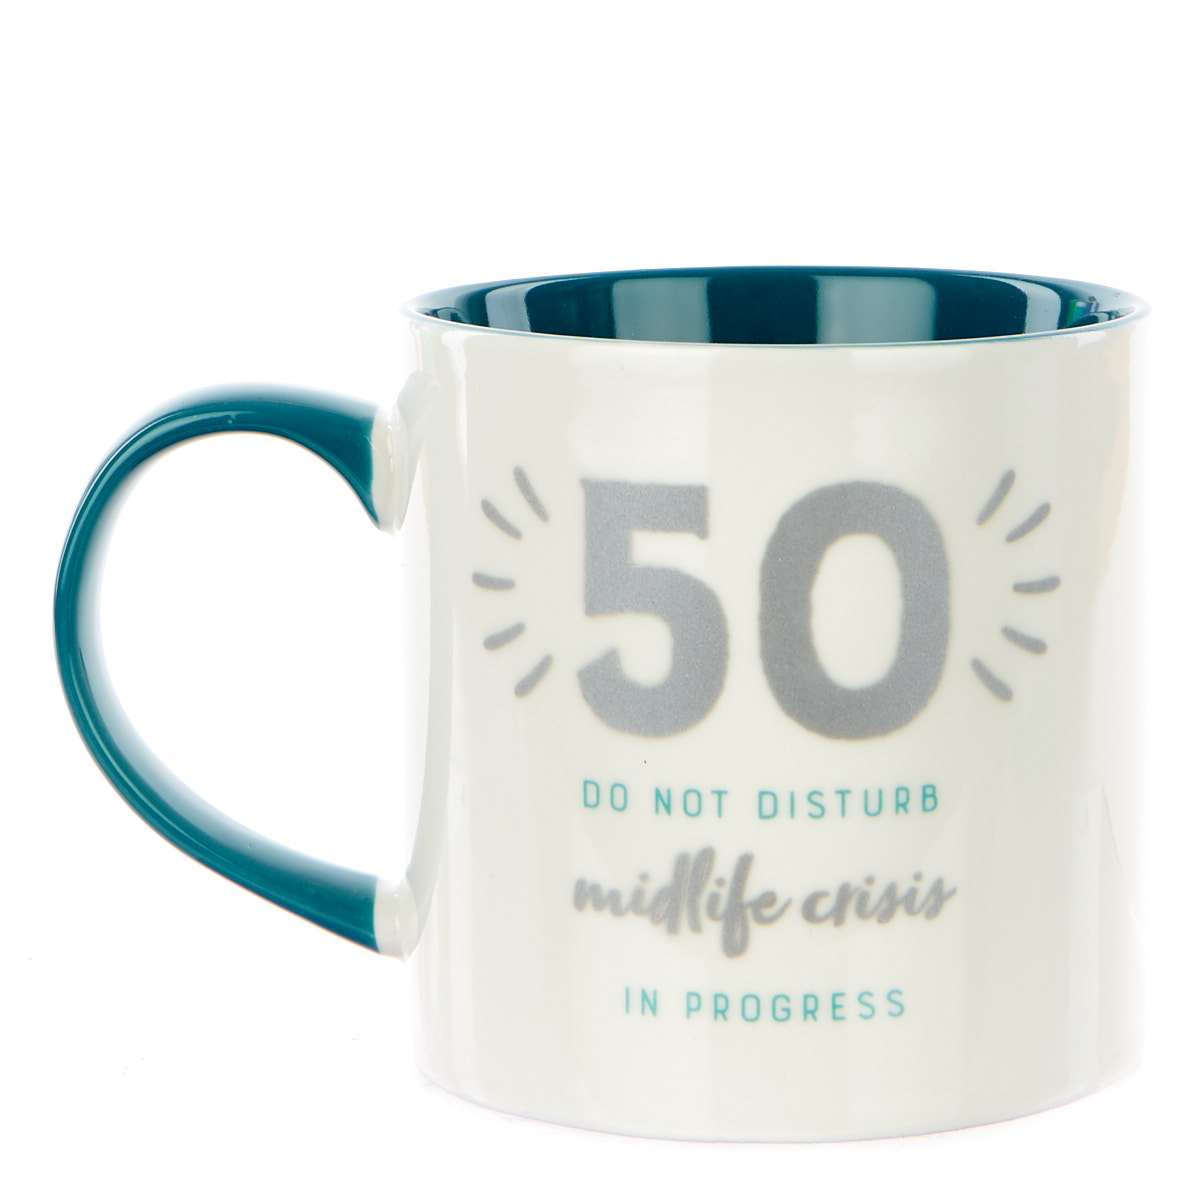 50th Birthday Mug - Midlife Crisis in Progress